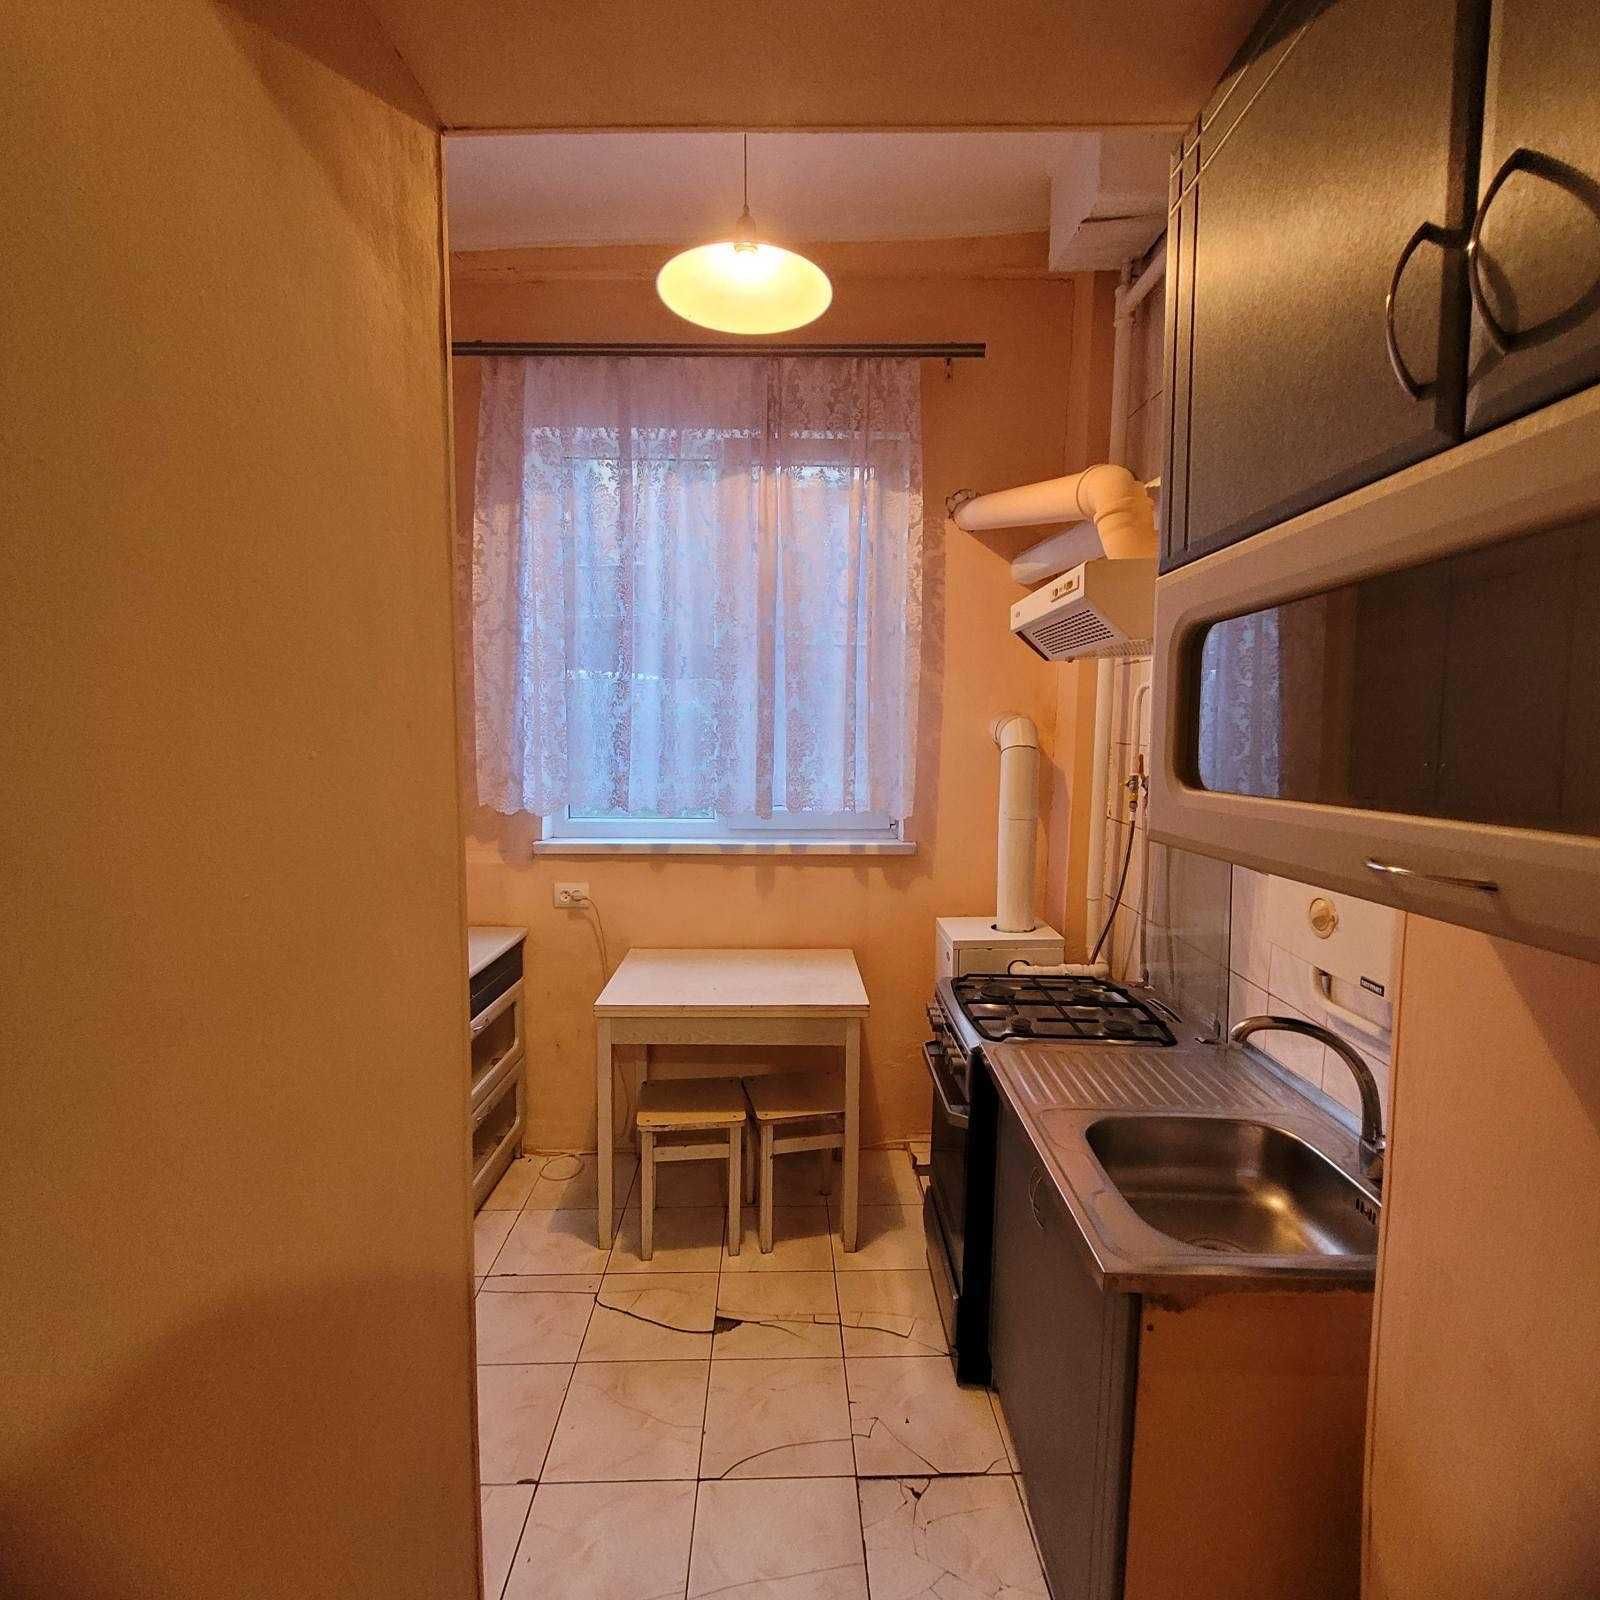 Продам 2-х комнатную квартиру в Малиновском р-не с ремонтом